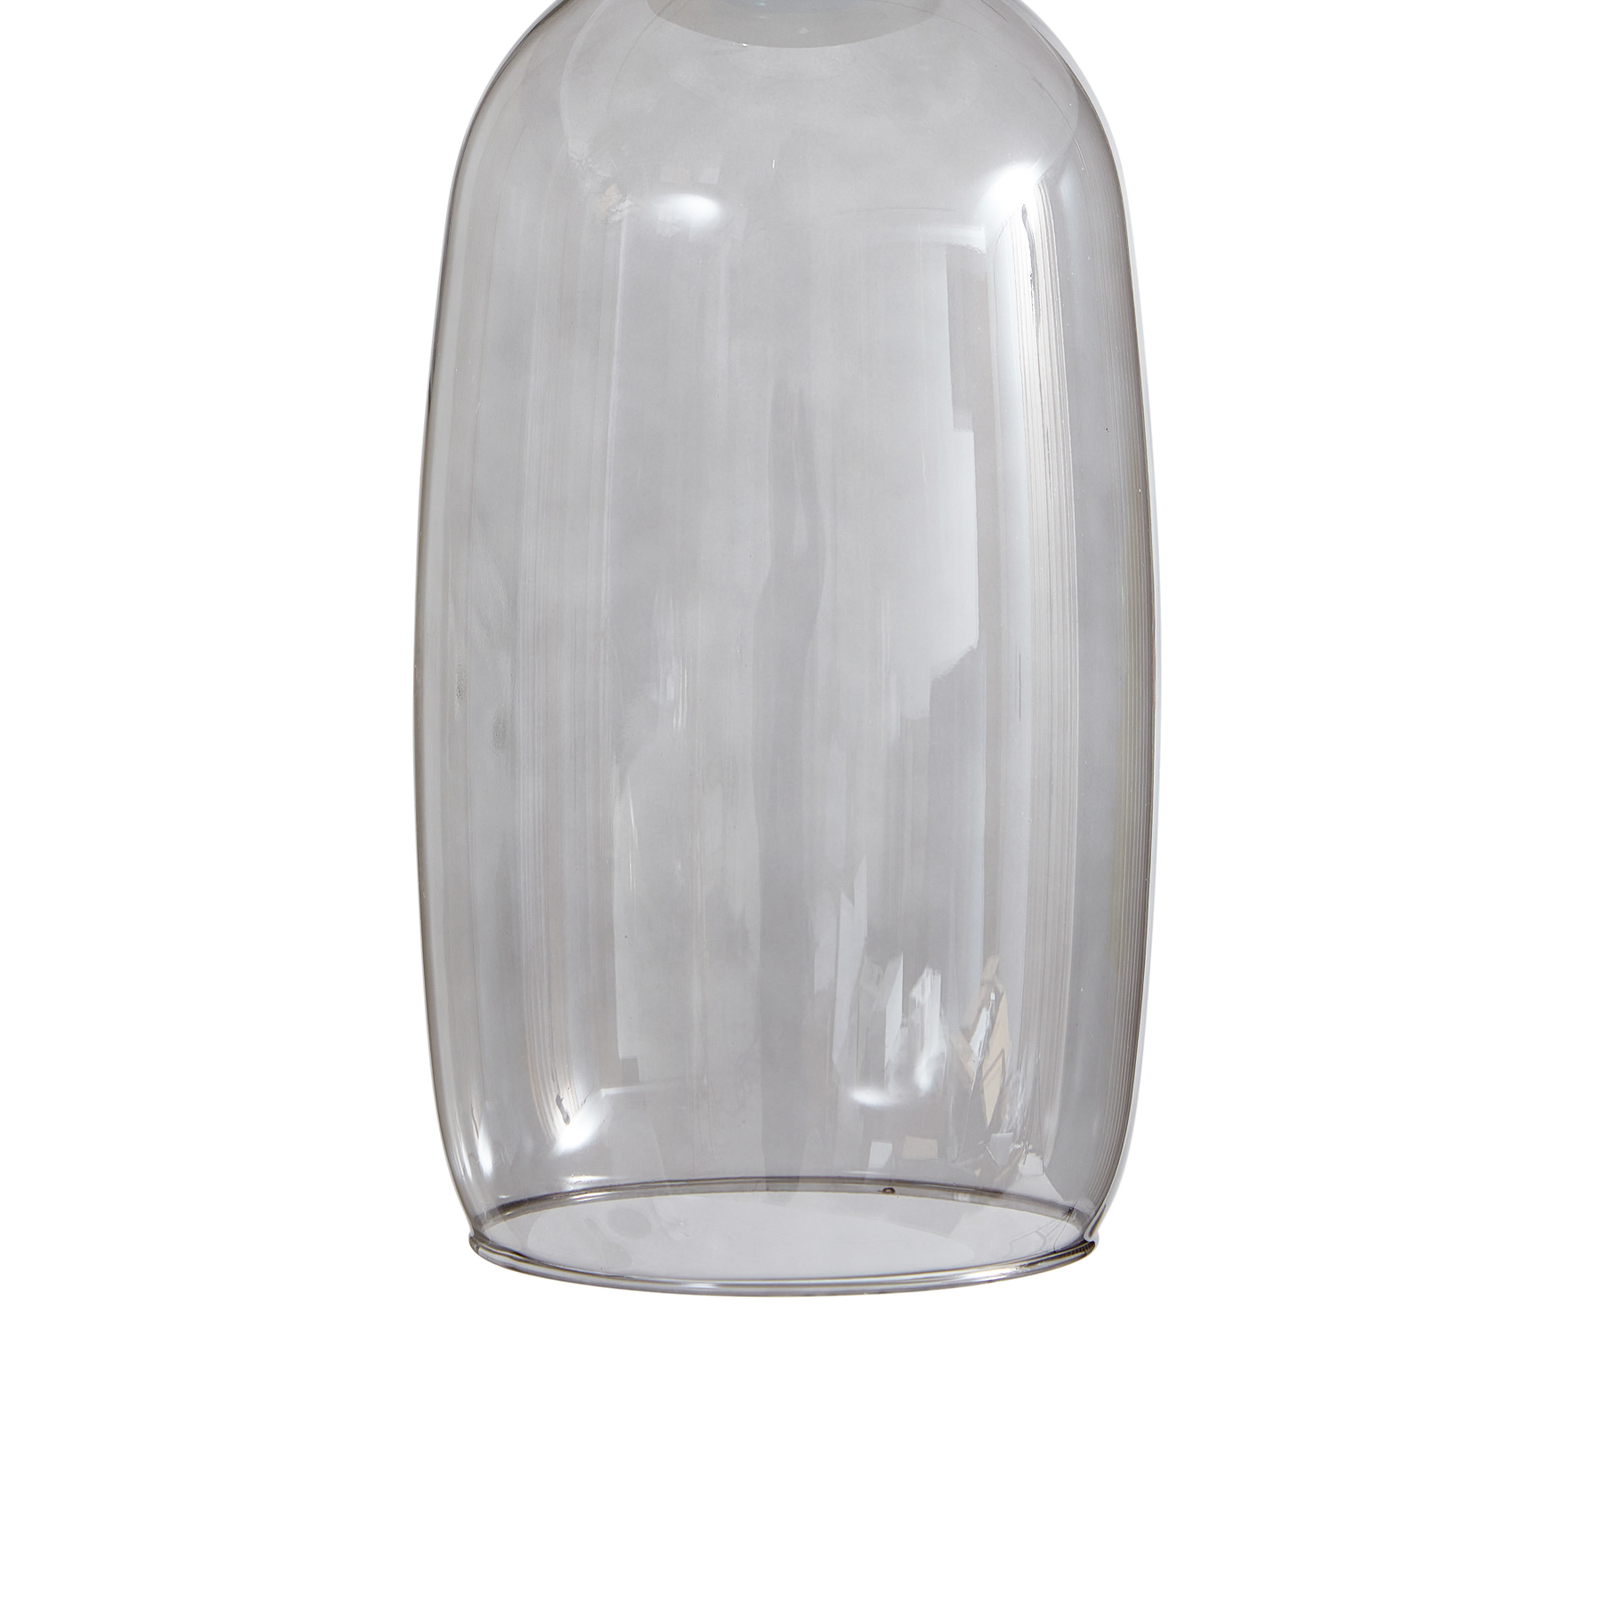 Lucande LED hengelampe Fay, lys grå/lys blå, glass, Ø 15 cm